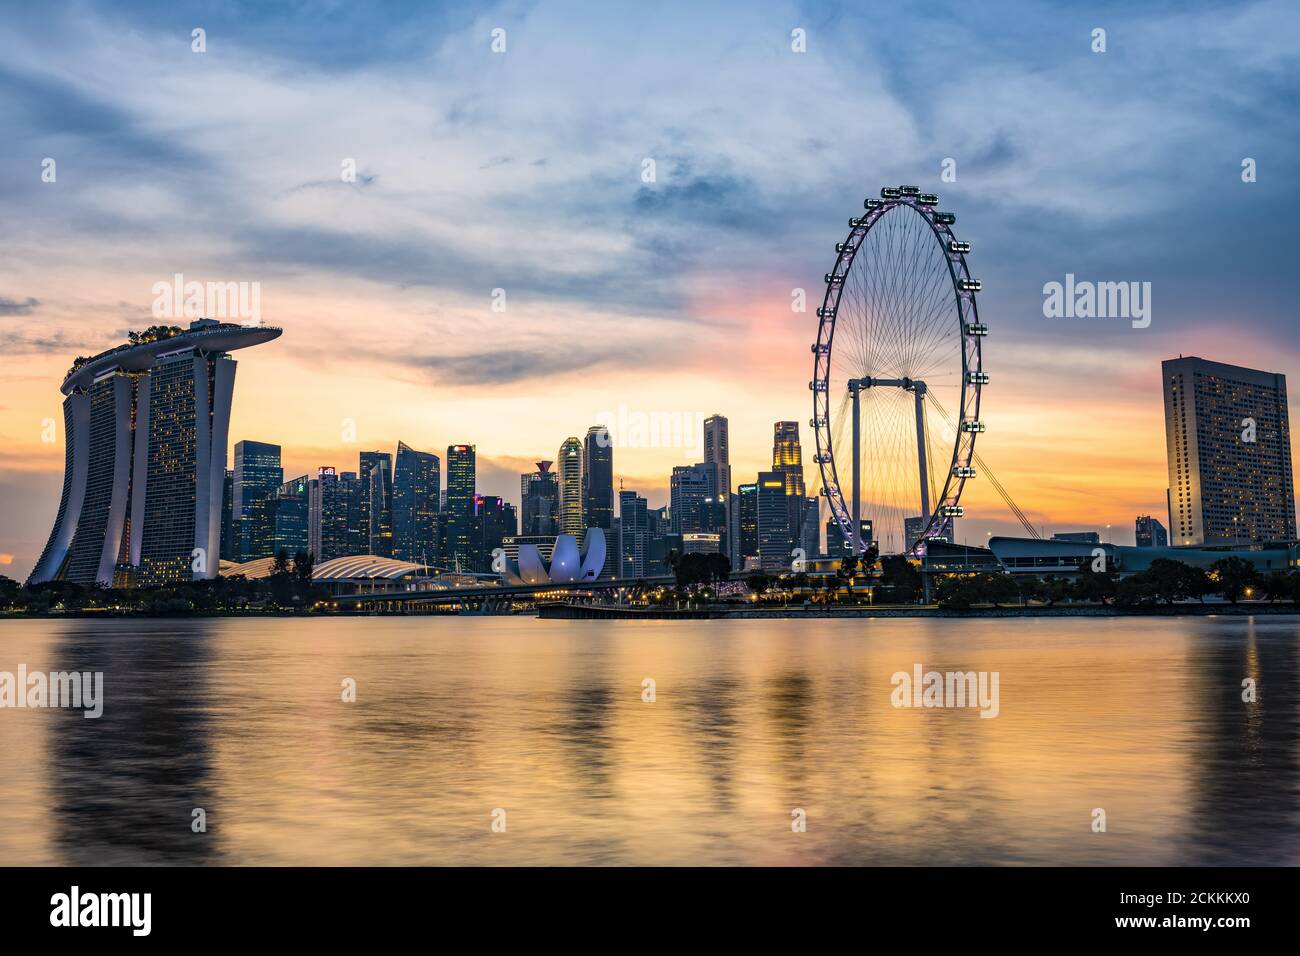 Splendida vista dello skyline di Marina Bay durante uno splendido tramonto a Singapore. Singapore è una città-stato di isola sovrana nel sud-est asiatico marittimo. Foto Stock